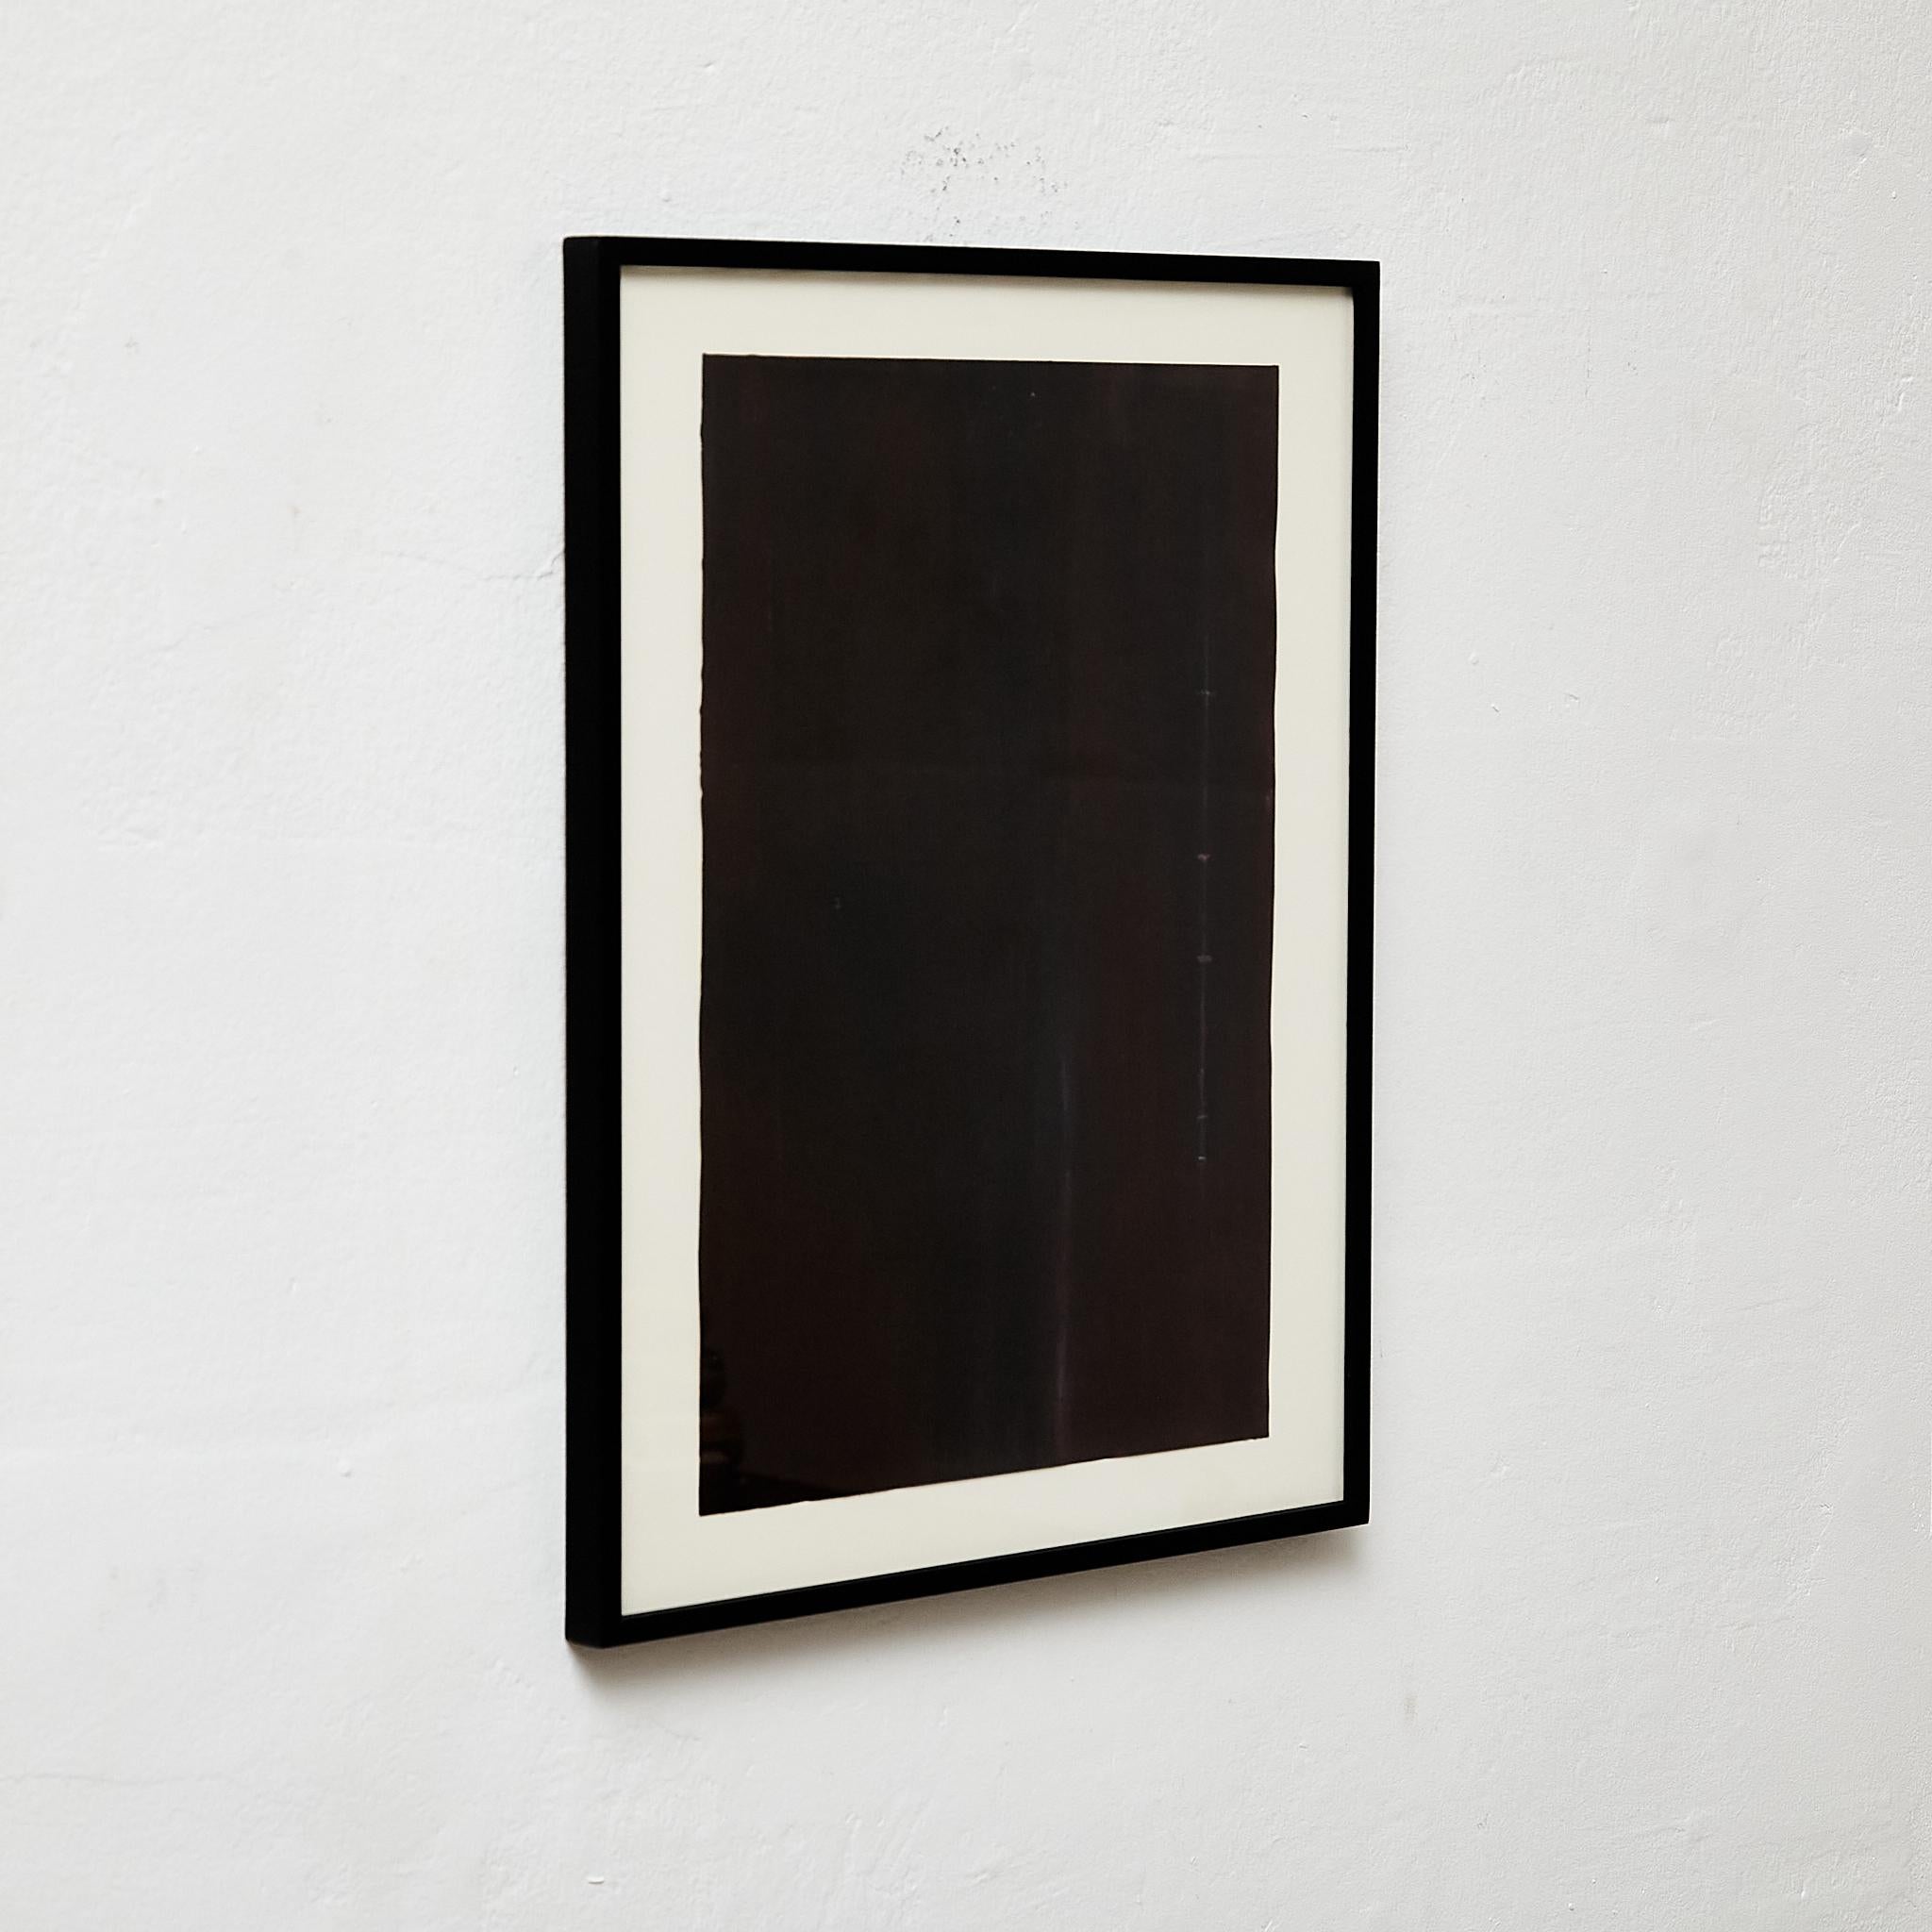 Dieses fesselnde abstrakte Kunstwerk, das 2019 von Javier Agudo geschaffen wurde, zeigt den einzigartigen Stil des Künstlers und seine Inspiration durch große Meister wie Mark Rothko. Das Werk ist gerahmt, was seine Präsentation aufwertet, und kann